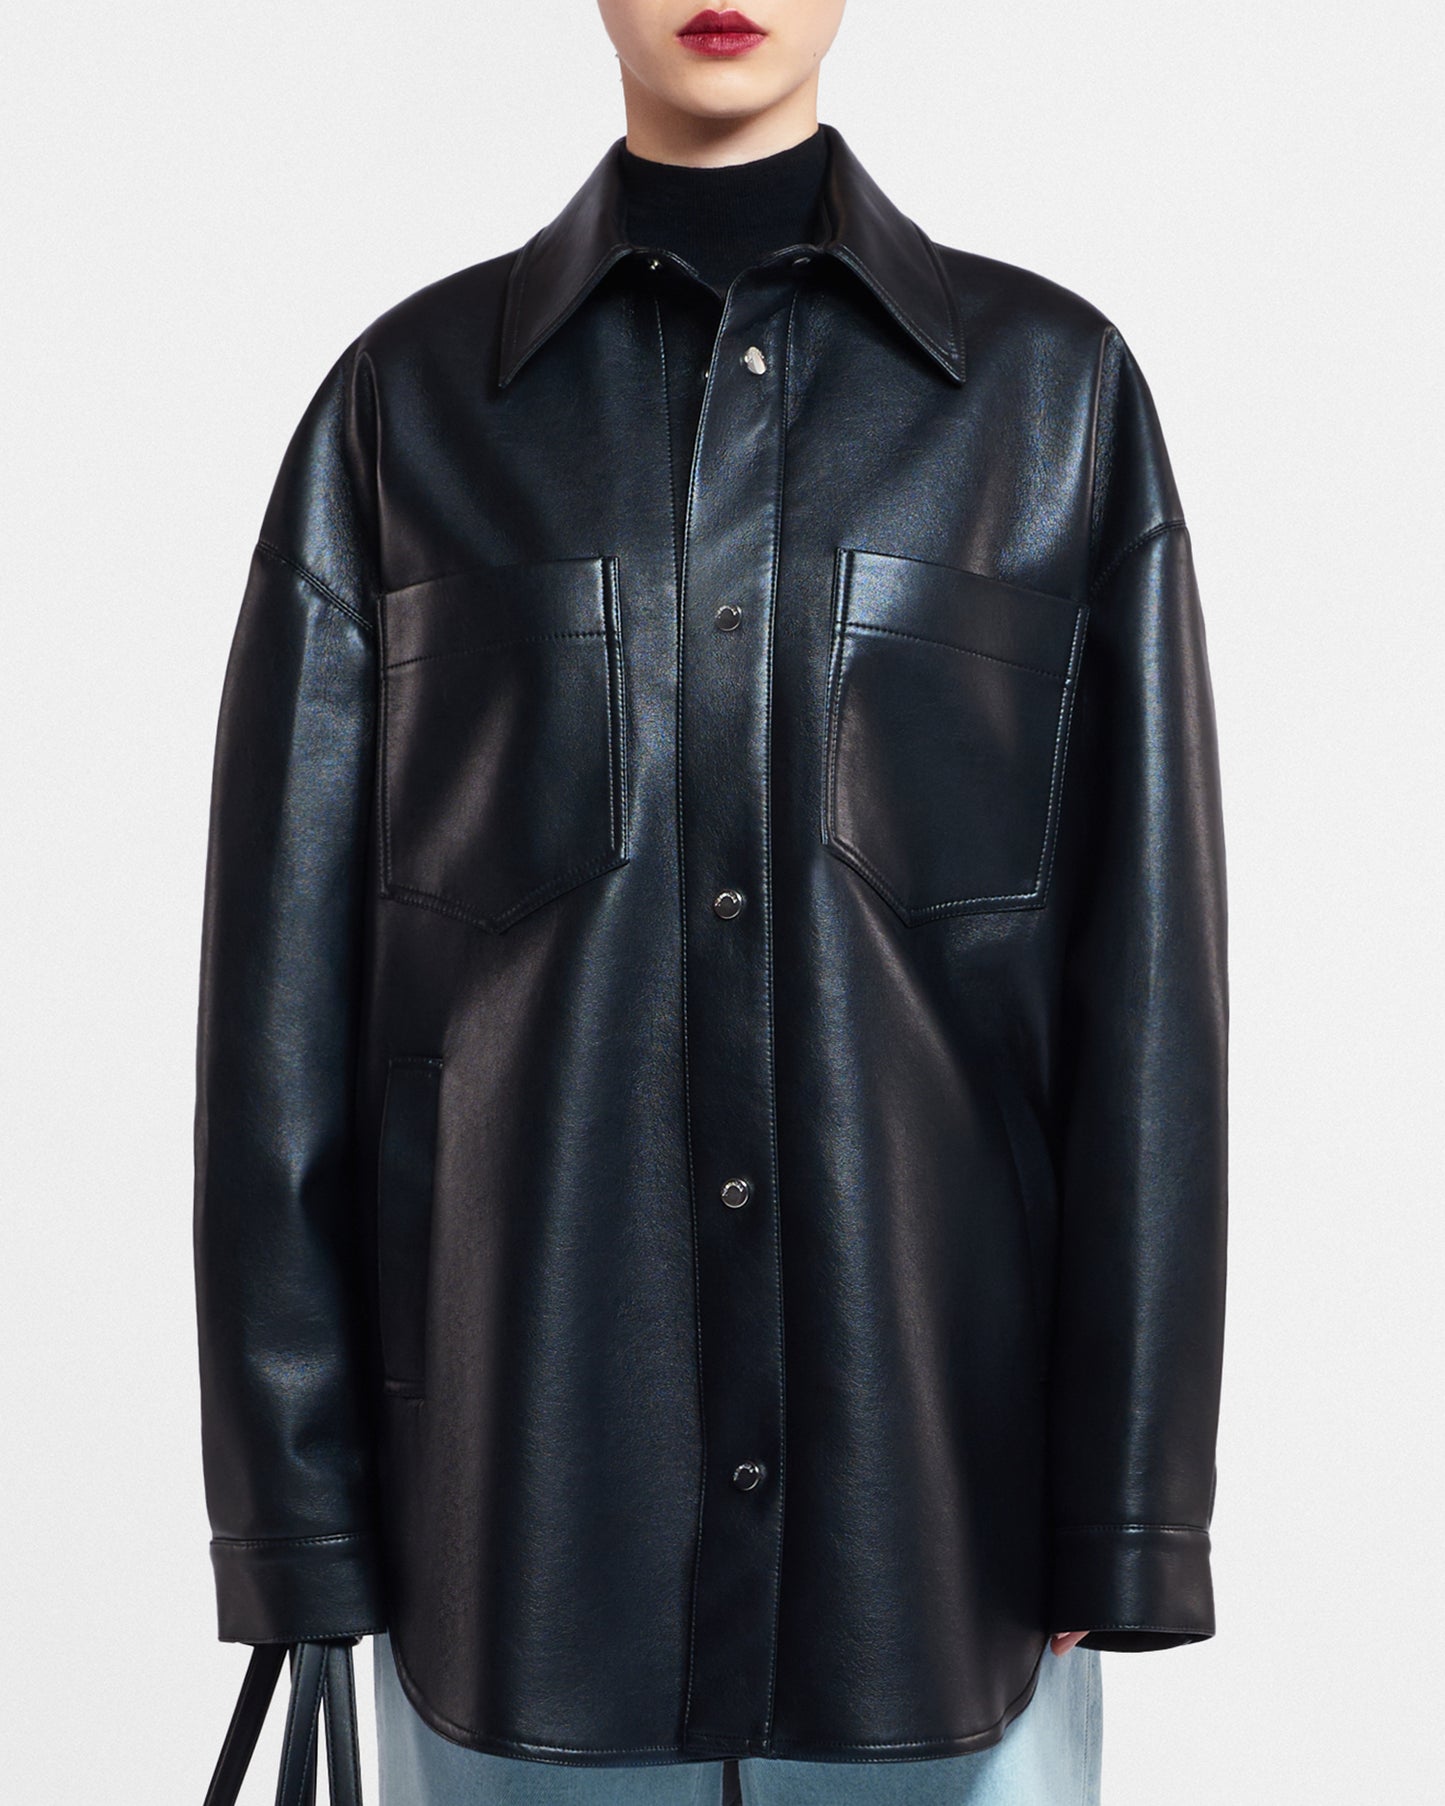 Martin - Regenerated Leather Overshirt - Black